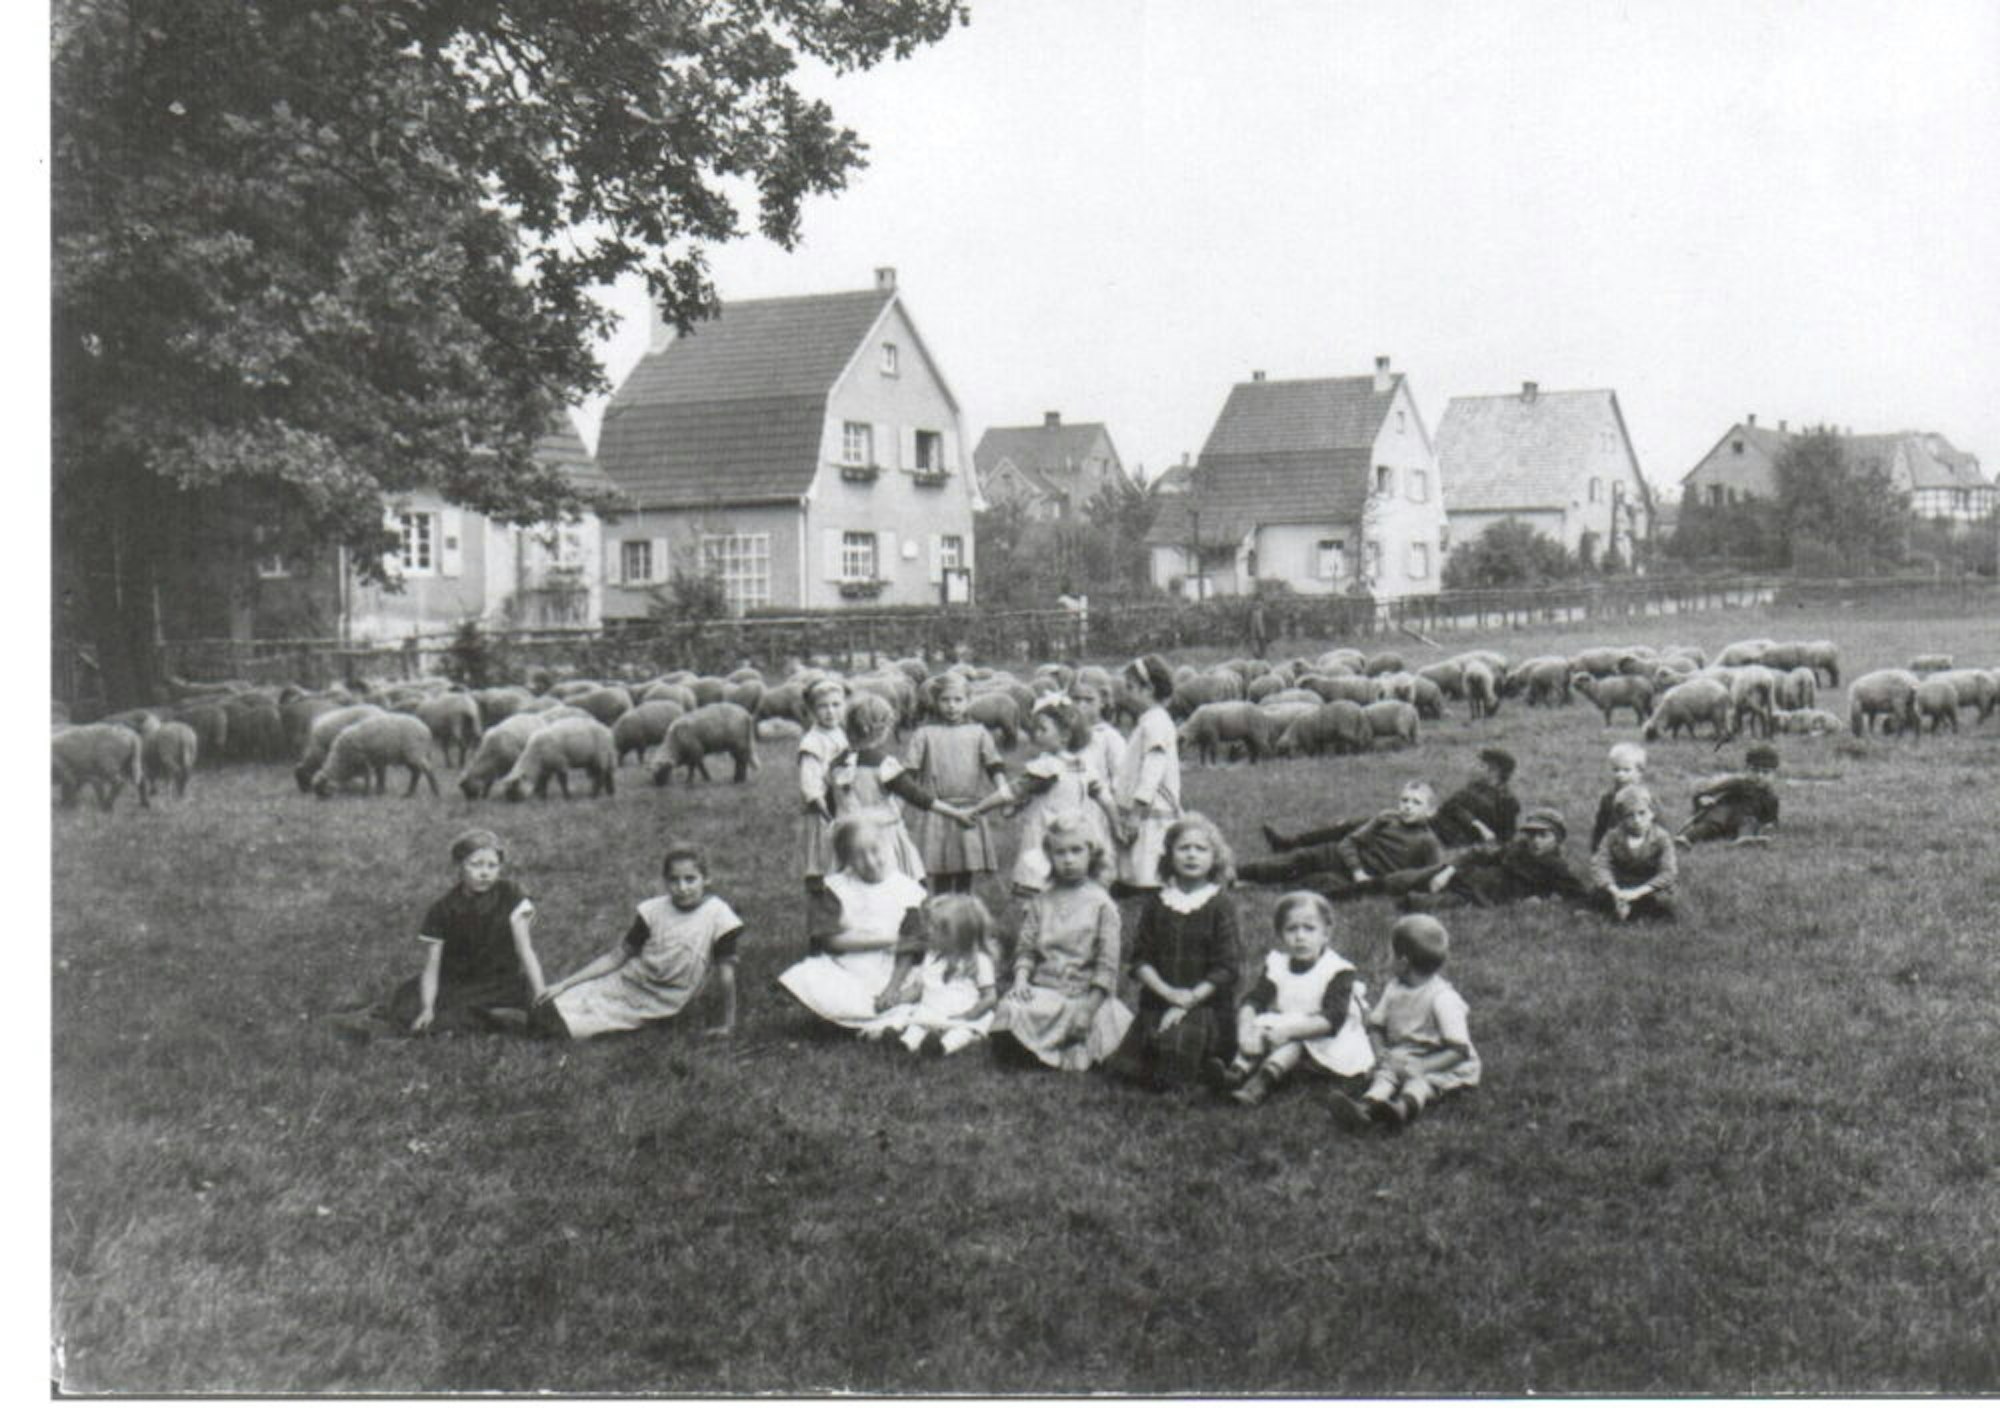 Gärten statt Mietskasernen, das war die Grundidee für das Wohnprojekt der Unternehmerfamilie Zanders Ende des 19. Jahrhunderts.